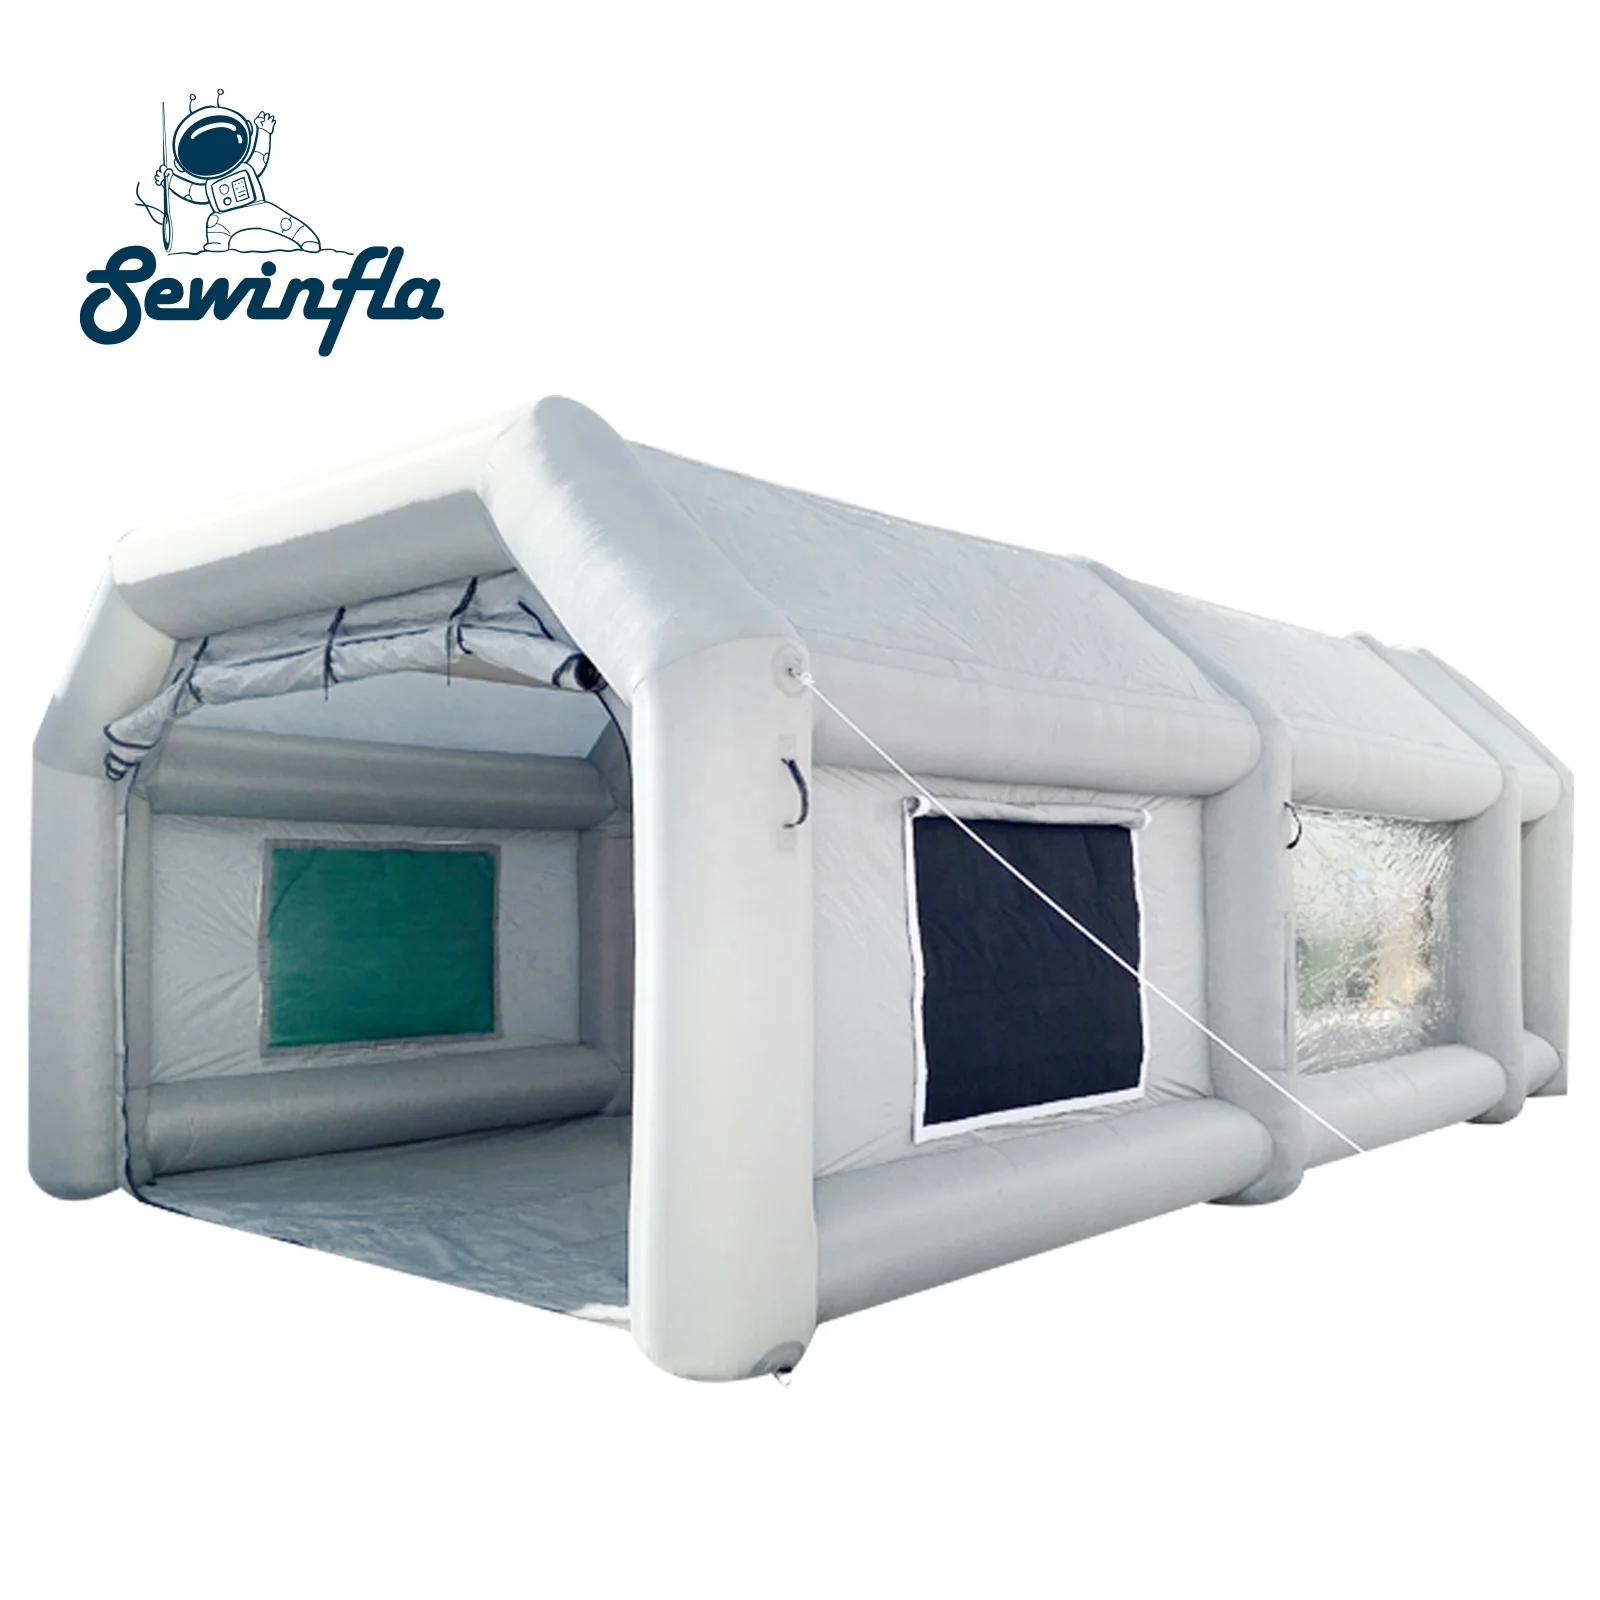 Sewinfla надувная покрасочная камера 28x15x11 футов с воздуходувками профессиональная надувная покрасочная камера портативная покраска для автомобиля палатка